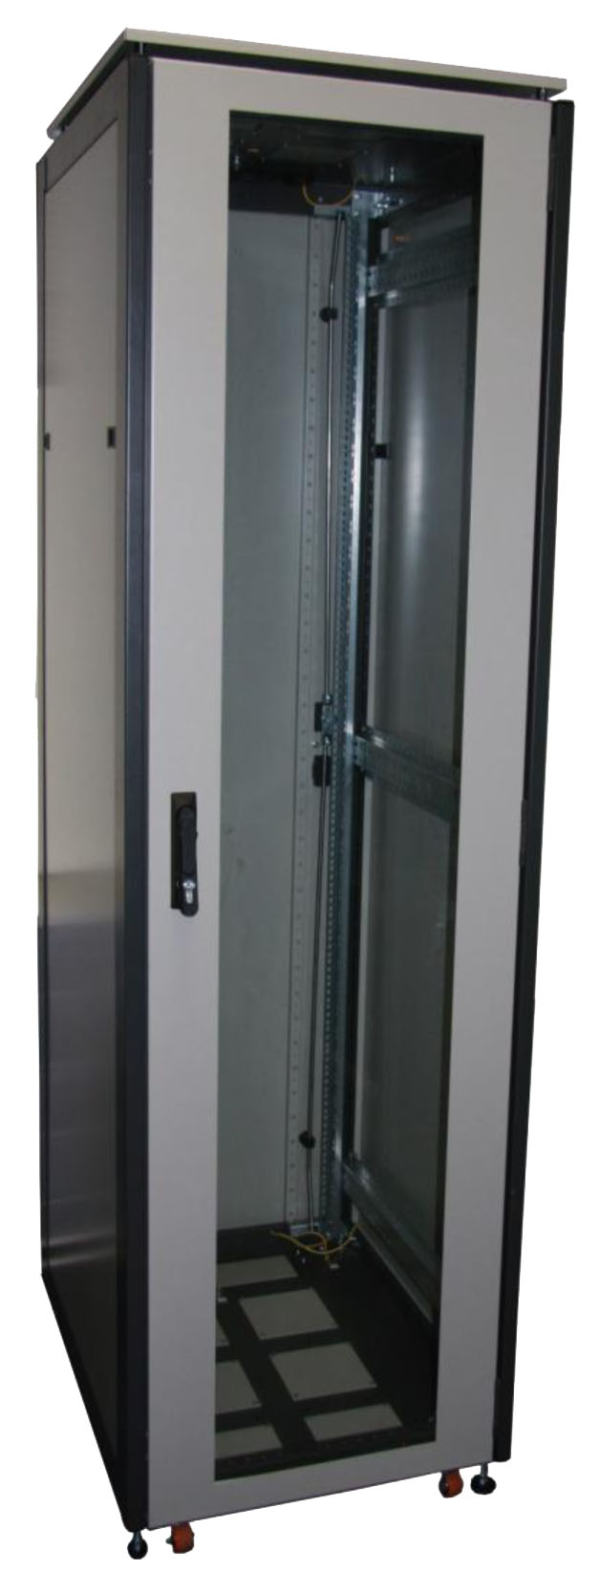 ССКТБ ТОМАСС ШТК-6810Э-01 - шкаф телекоммуникационный 19", 18U, 600х800х1000 мм, с металлической задней панелью и стеклянной дверью